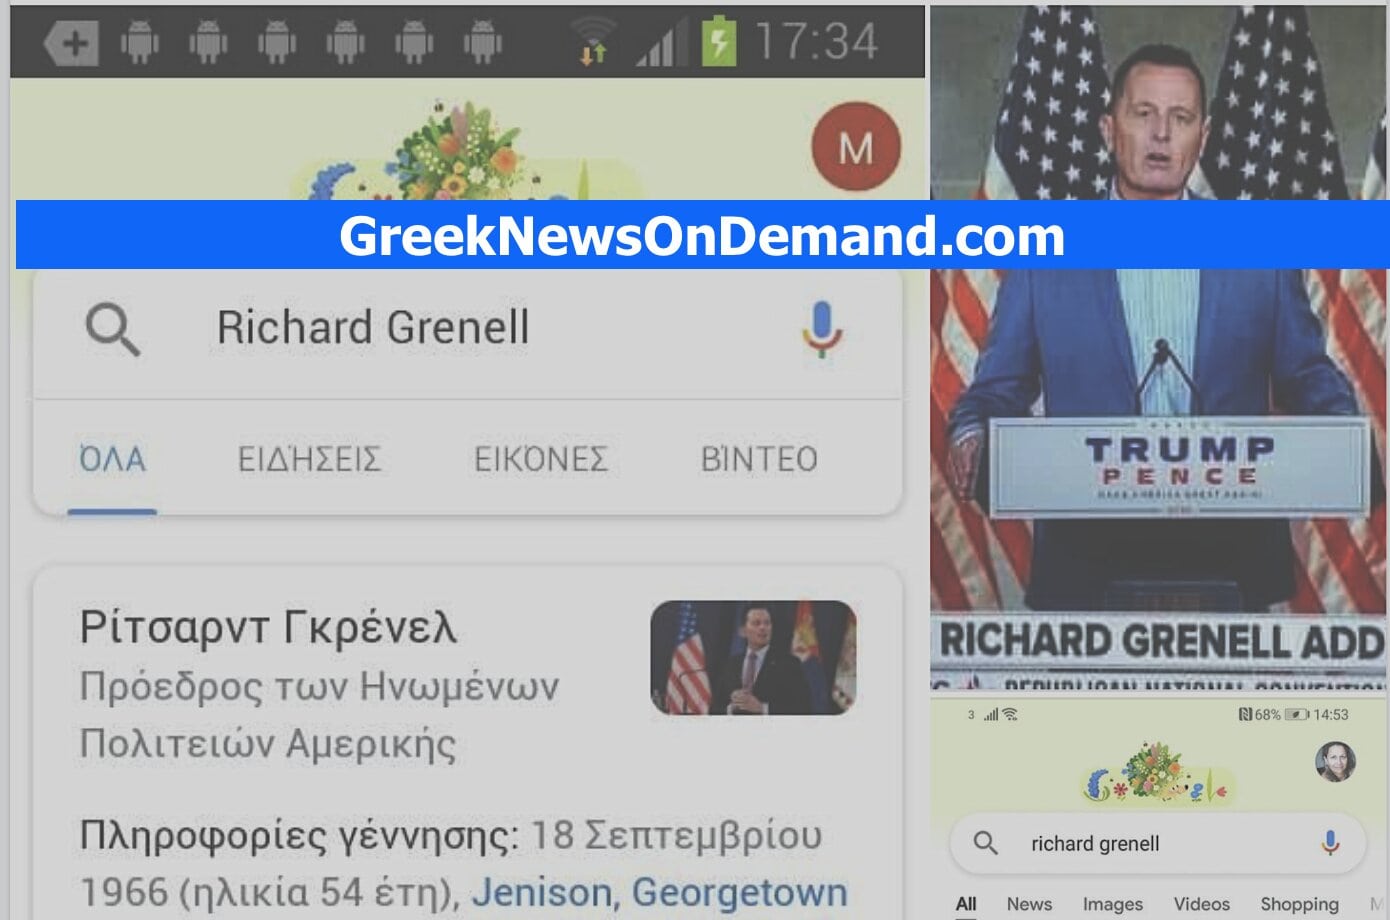 Ο πρώην βοηθός του Τραμπ Ρίτσαρντ Γκρενέλ τουτάρει «εκτελεστικά διατάγματα» αφού η Google τον αναφέρει ως…Πρόεδρο των ΗΠΑ!!!